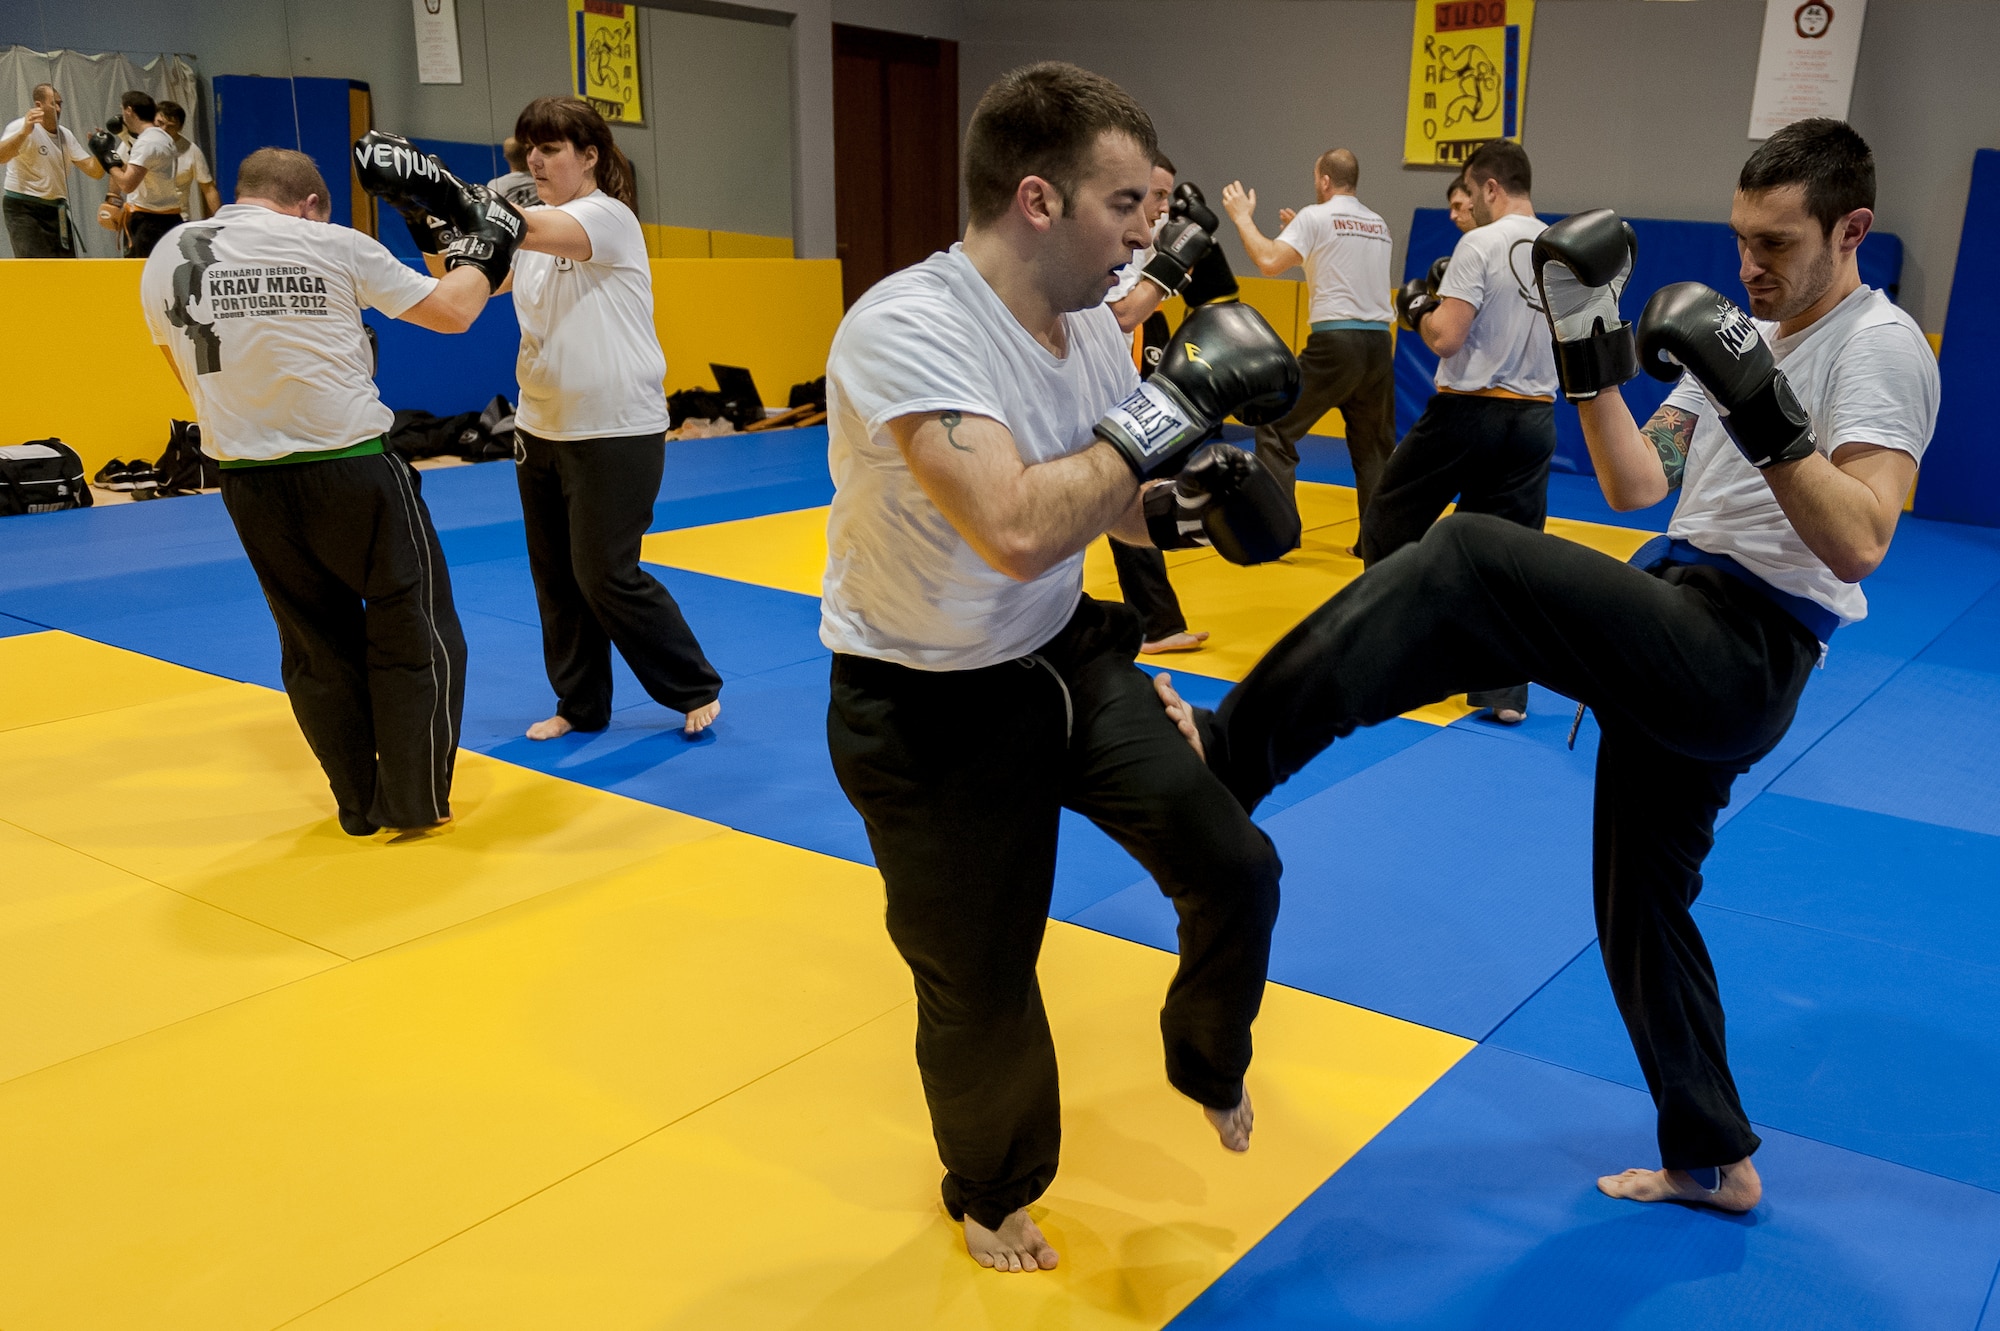 Self-Defense Classes - Pratt Institute